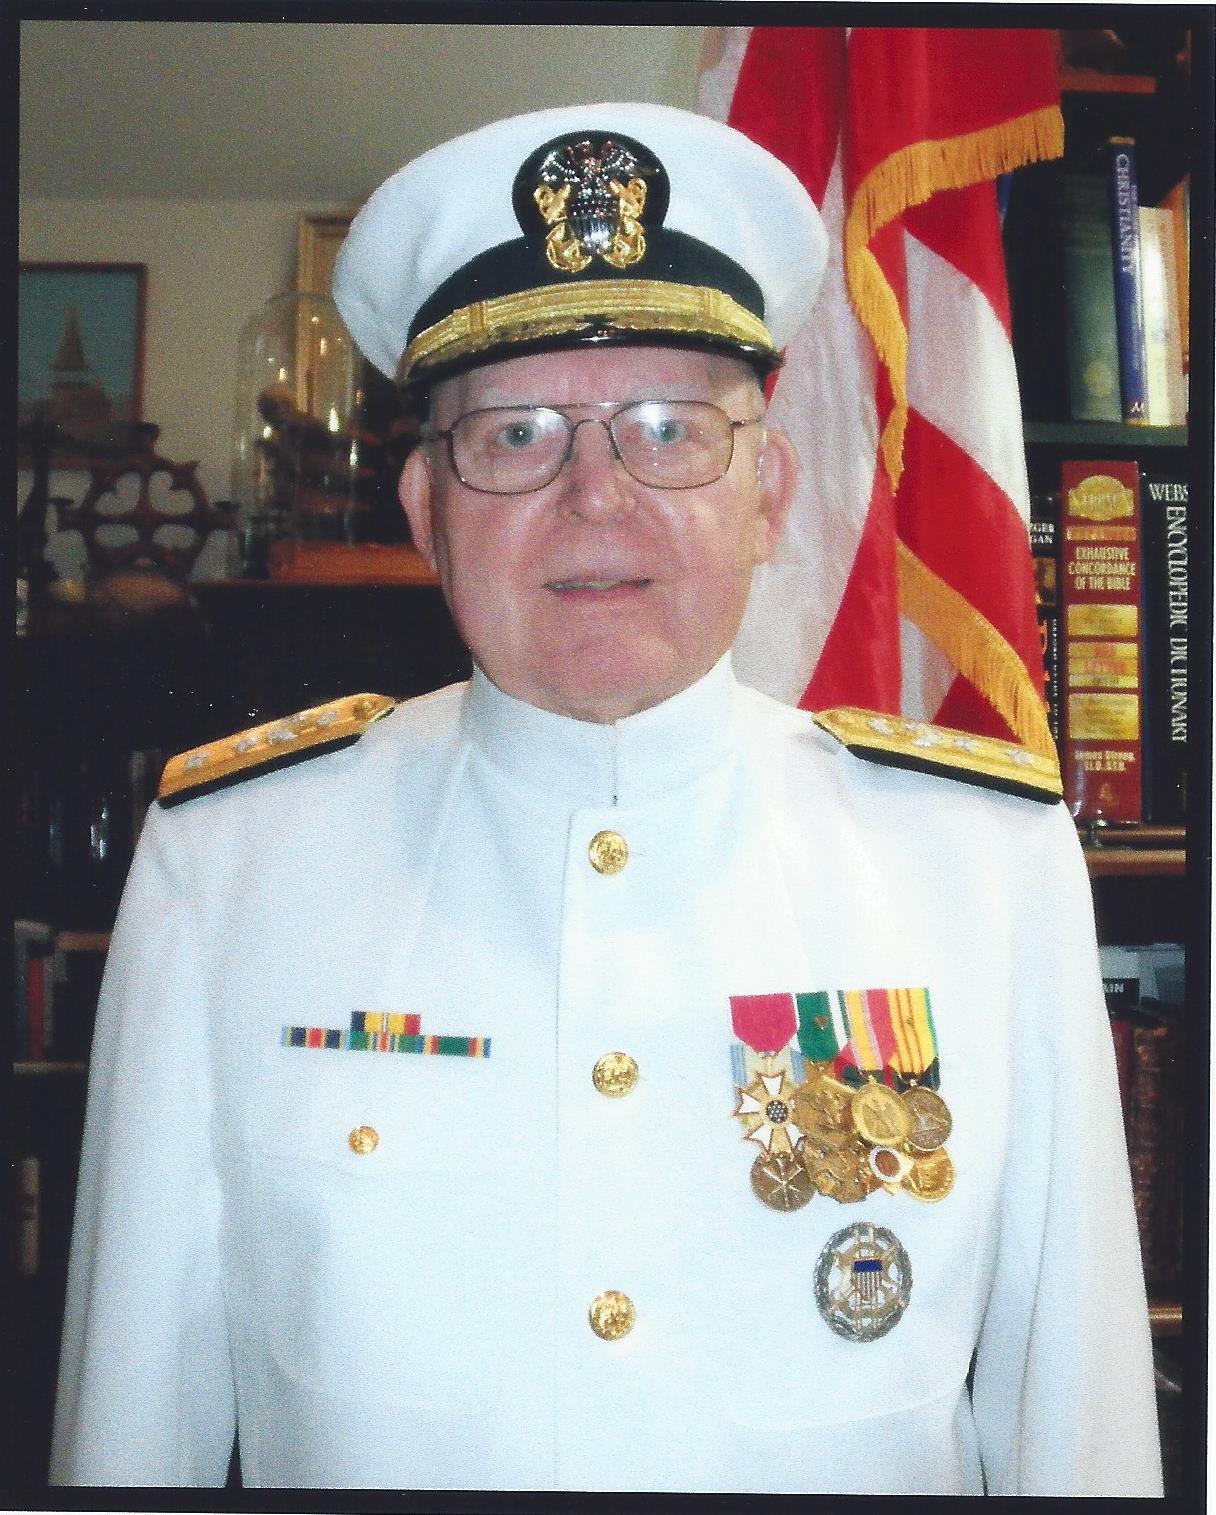 Rear Admiral Joseph H. Miller